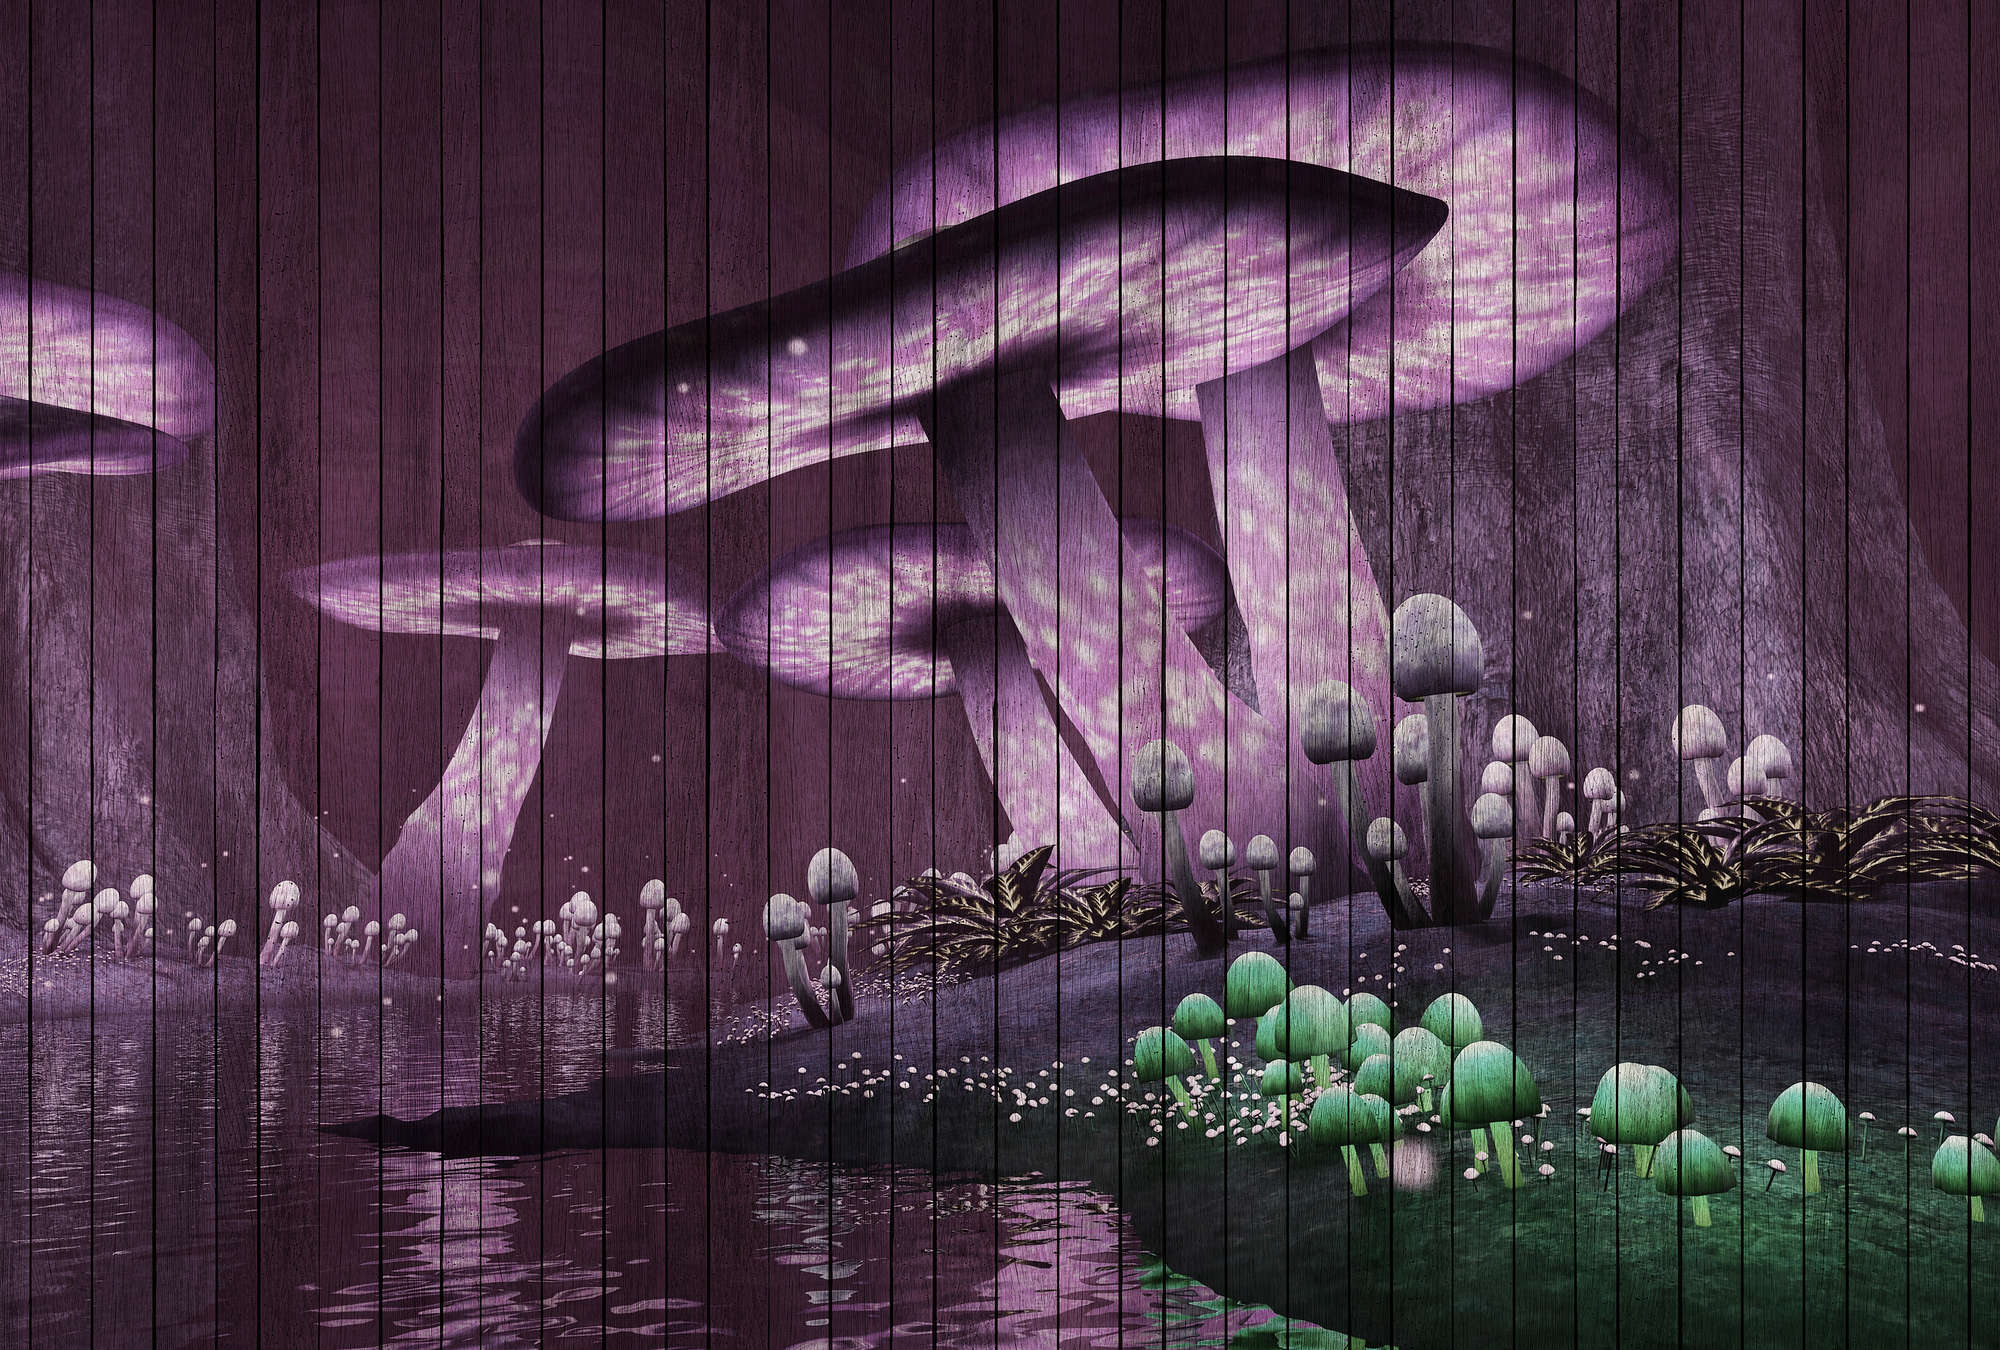             Fantasy 2 - Papier peint forêt magique avec structure en panneaux de bois - vert, violet | structure intissé
        